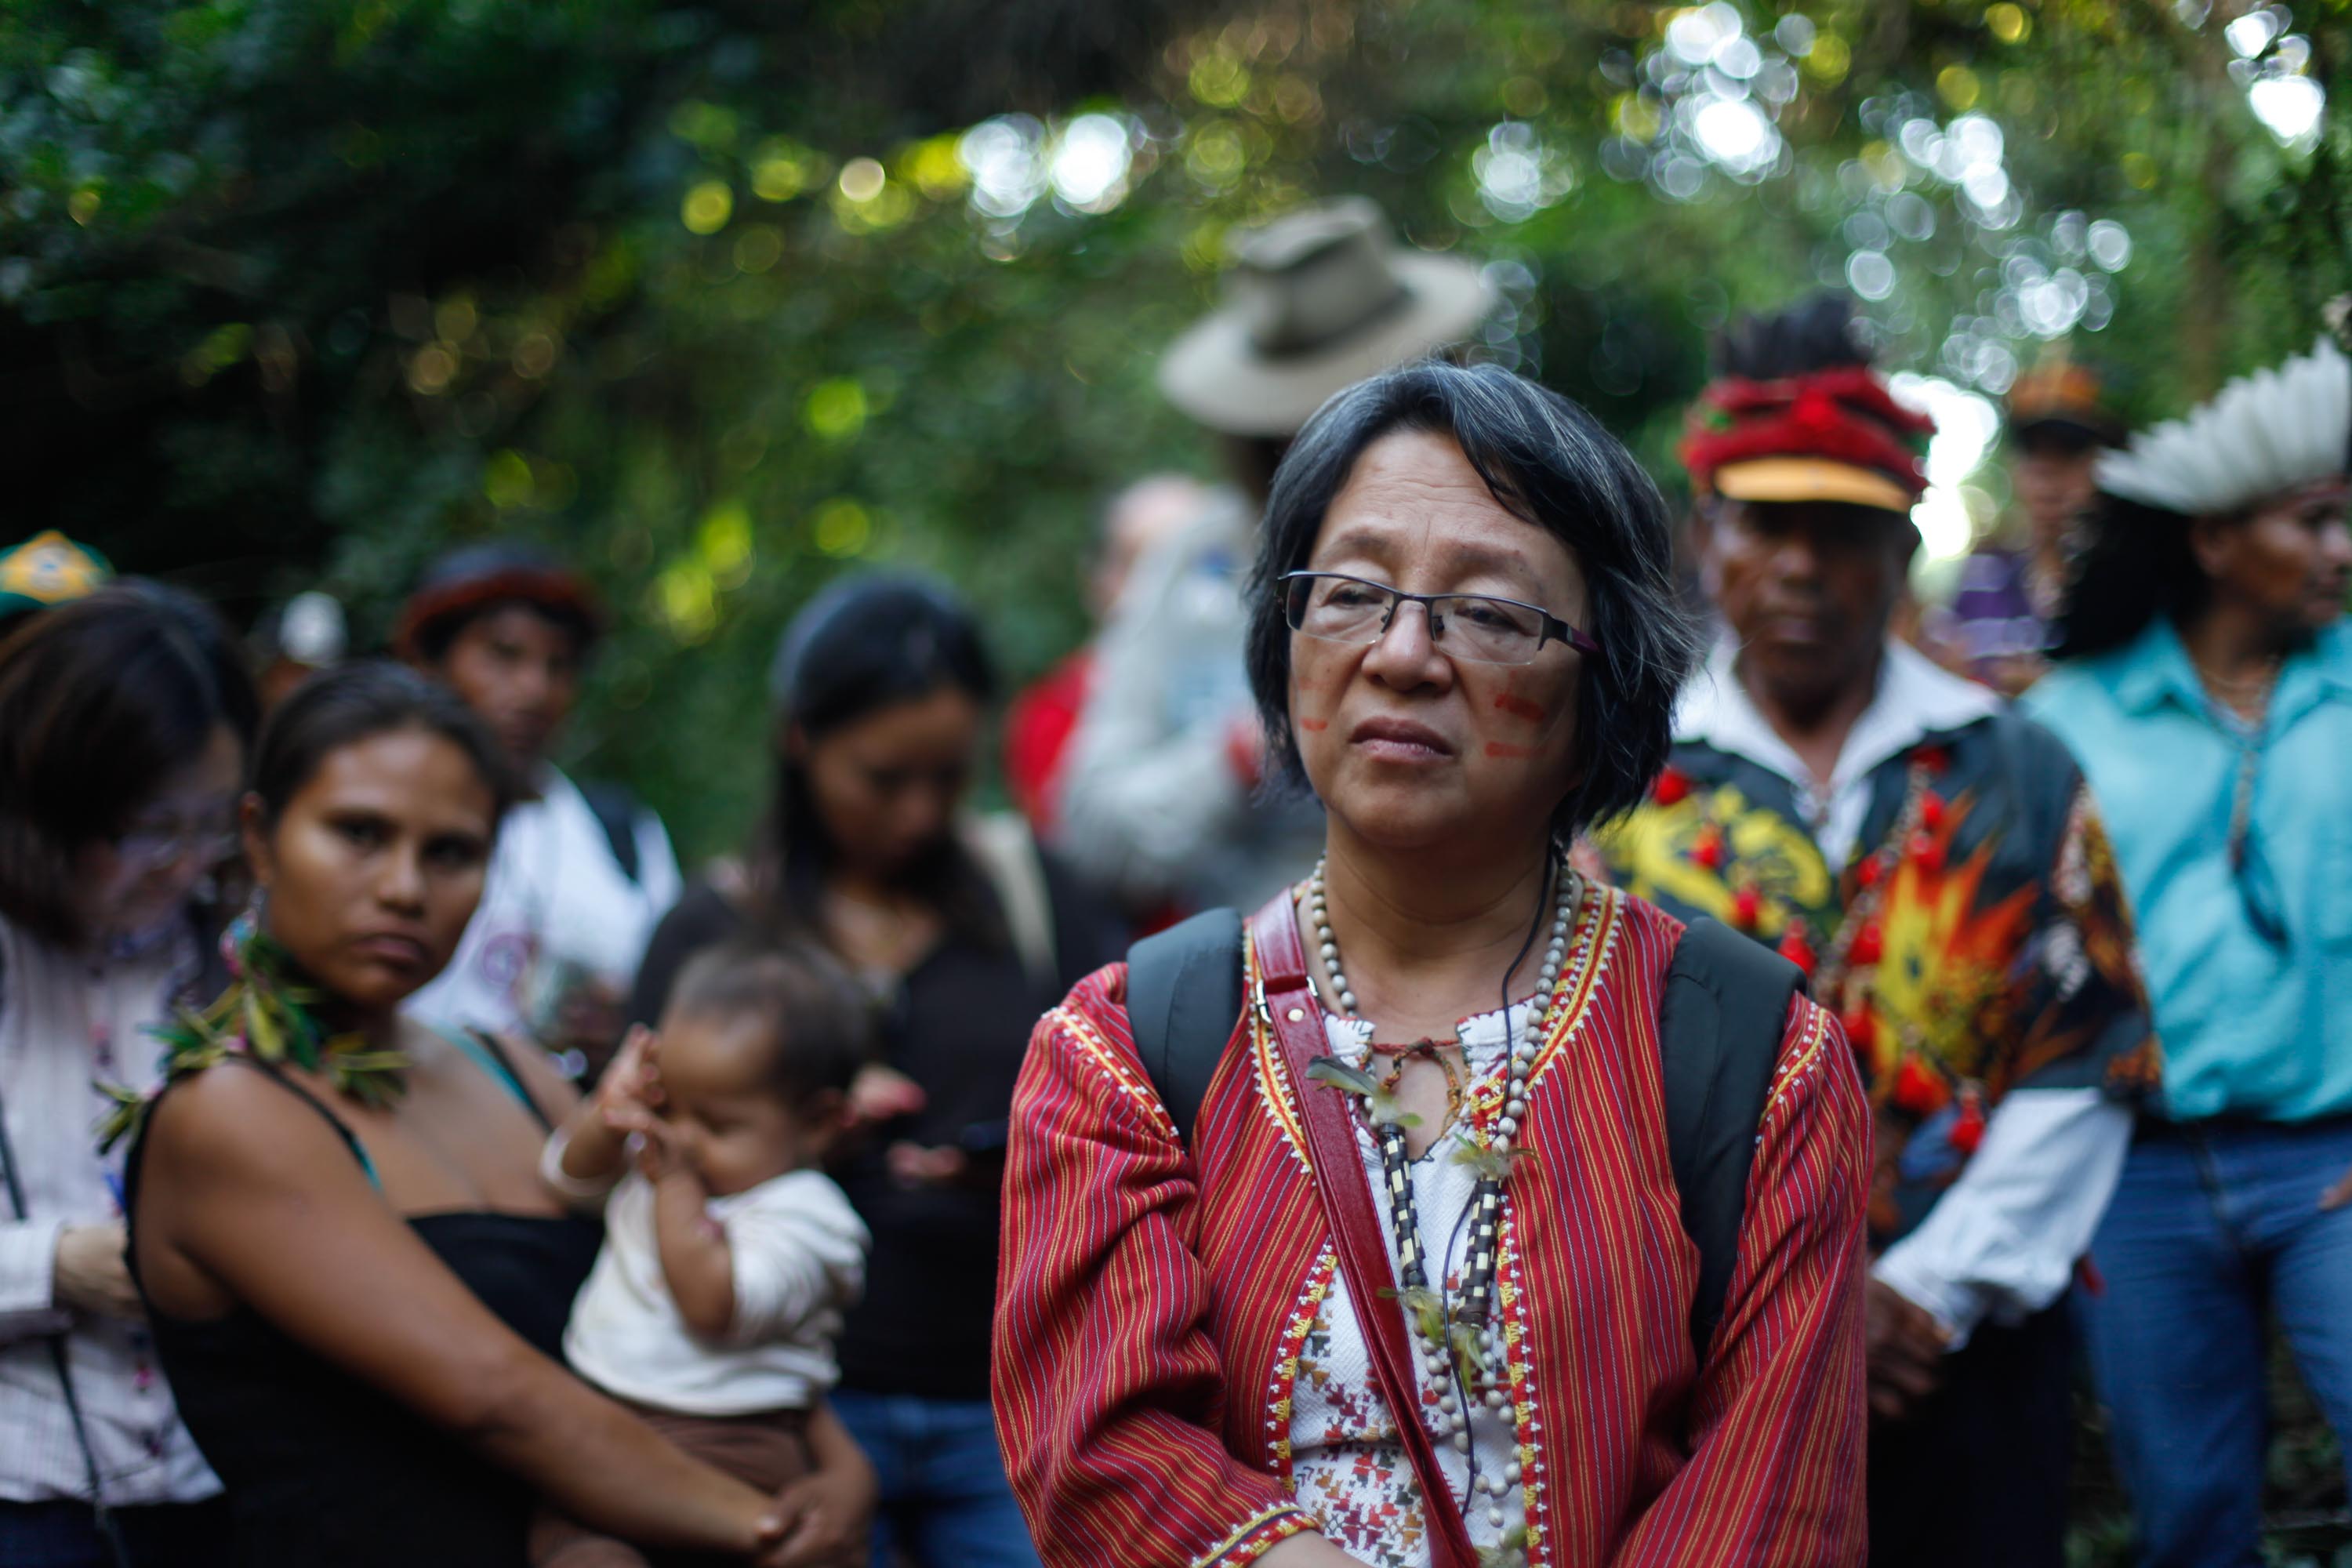 Relatora da ONU, Victoria Tauli-Corpuz, em visita a comunidades indígenas no Mato Grosso do Sul. Foto: Ruy Sposati/Cimi-MS